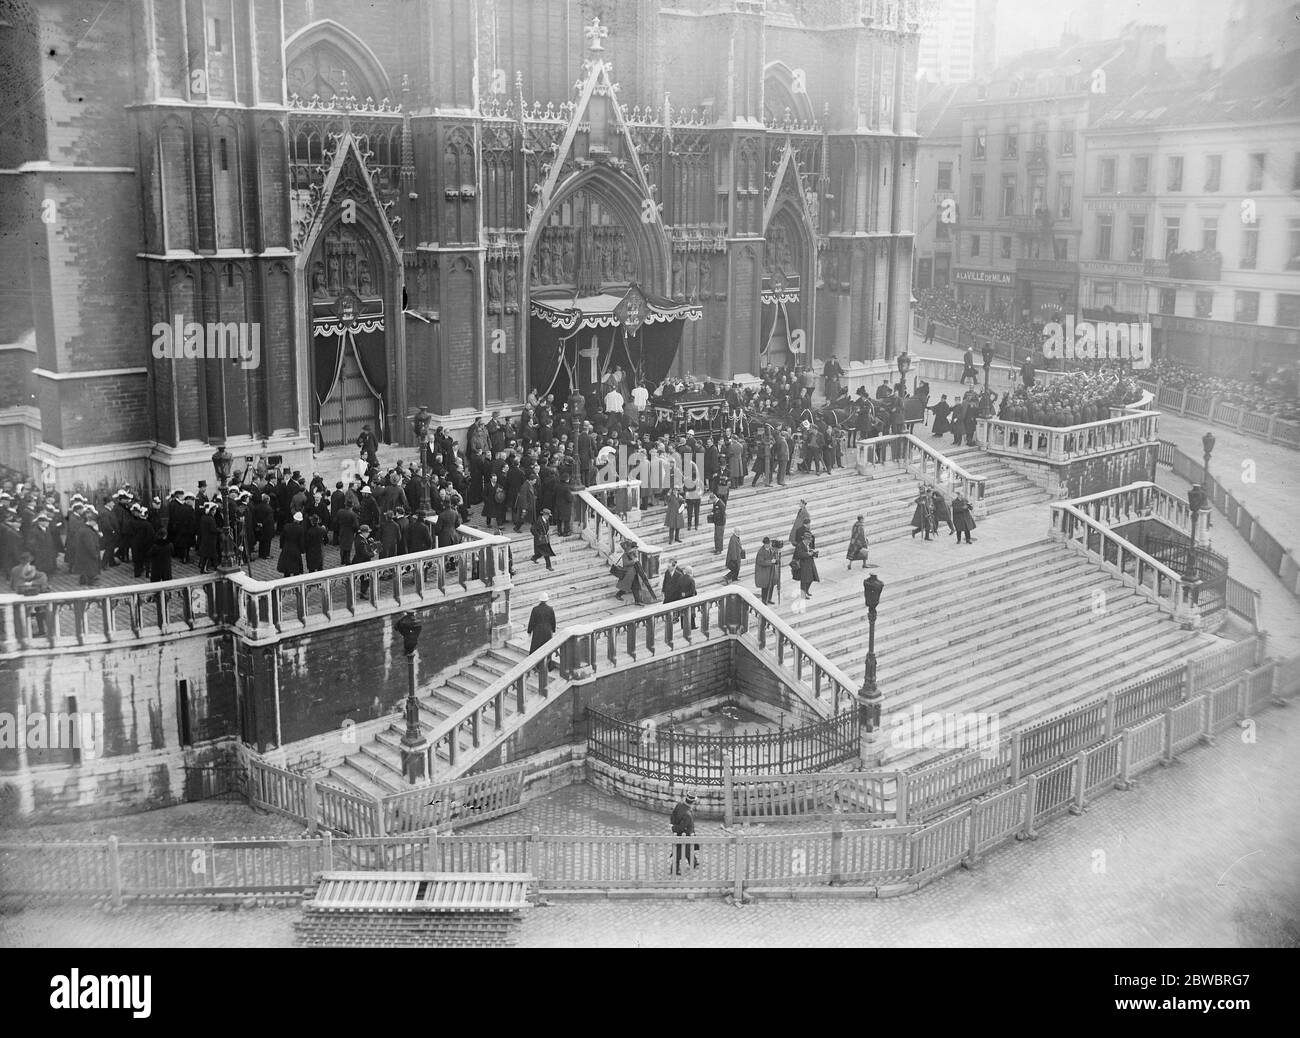 Cardinal Mercier . Impressionnante cérémonie funéraire à Bruxelles . L'arrivée à la cathédrale de Gudule. 28 janvier 1926 Banque D'Images